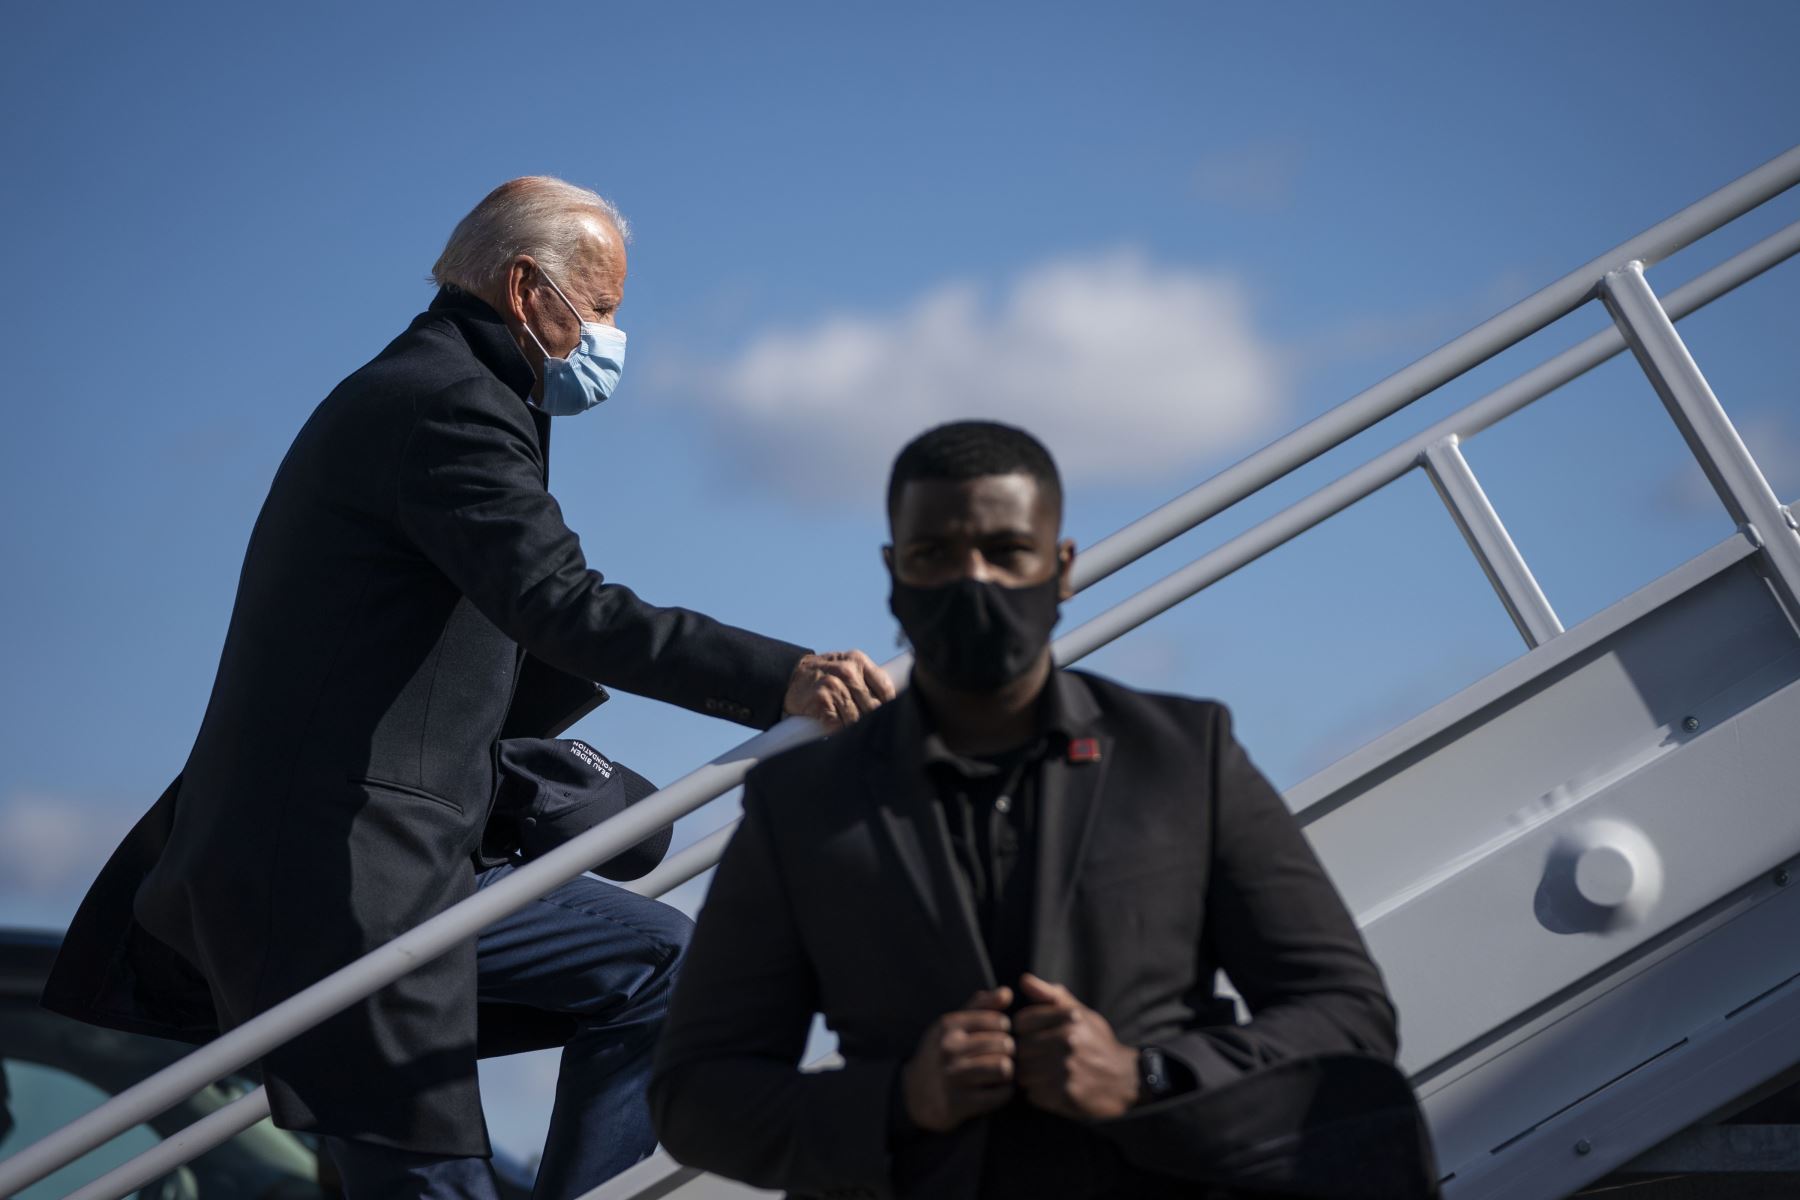 El candidato presidencial demócrata Joe Biden aborda su avión de campaña en el aeropuerto de  New Castle, Delaware. 
Foto: AFP